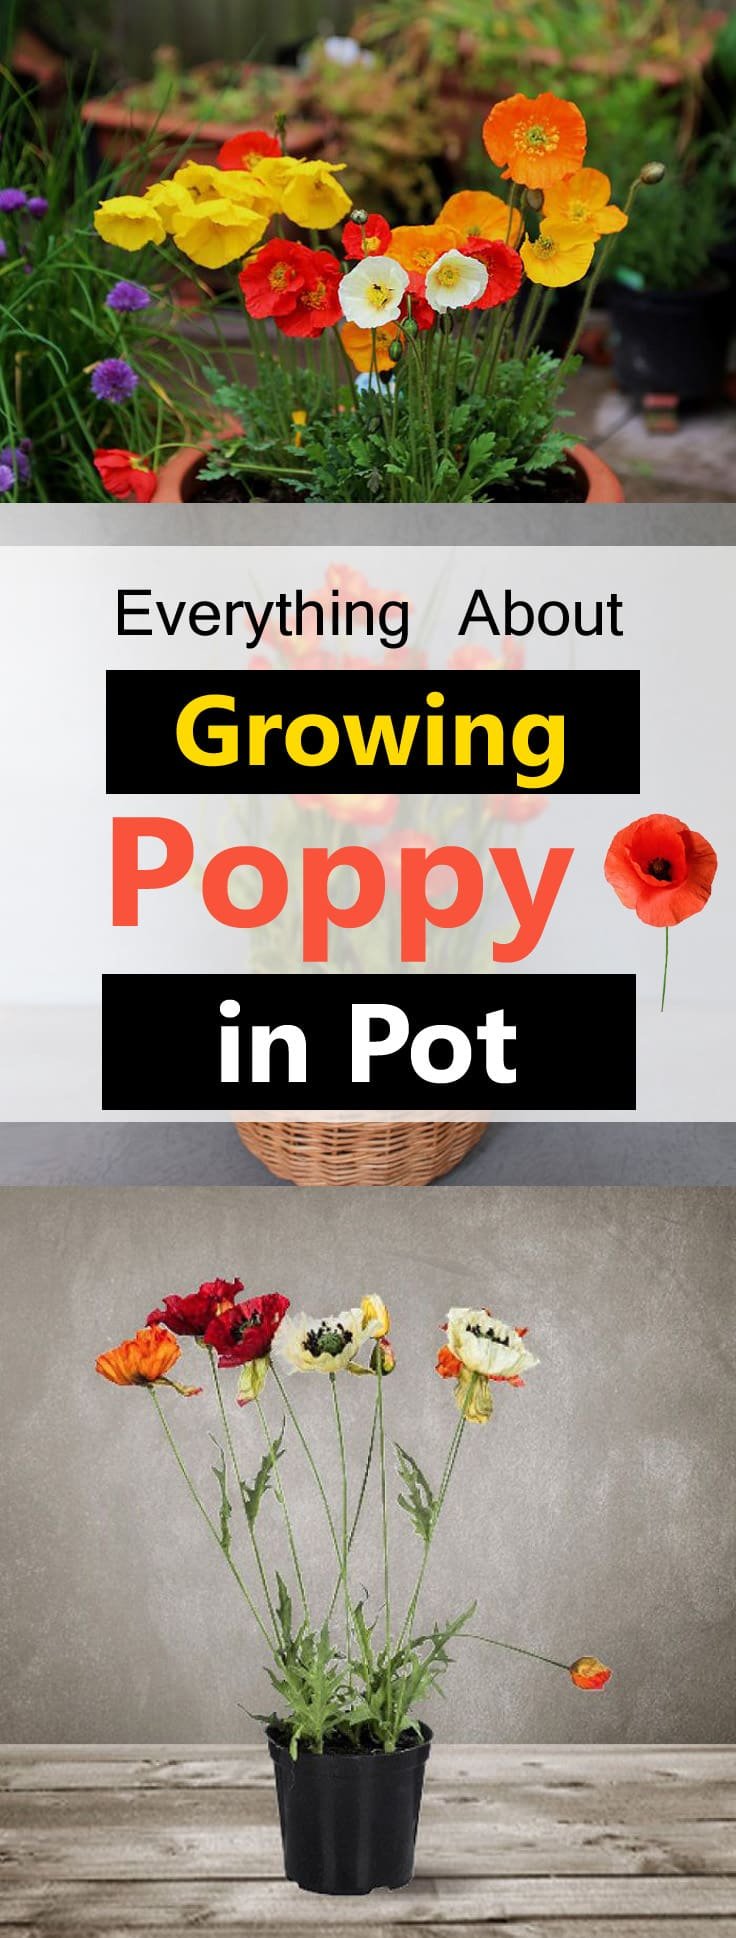 Growing poppy in pot